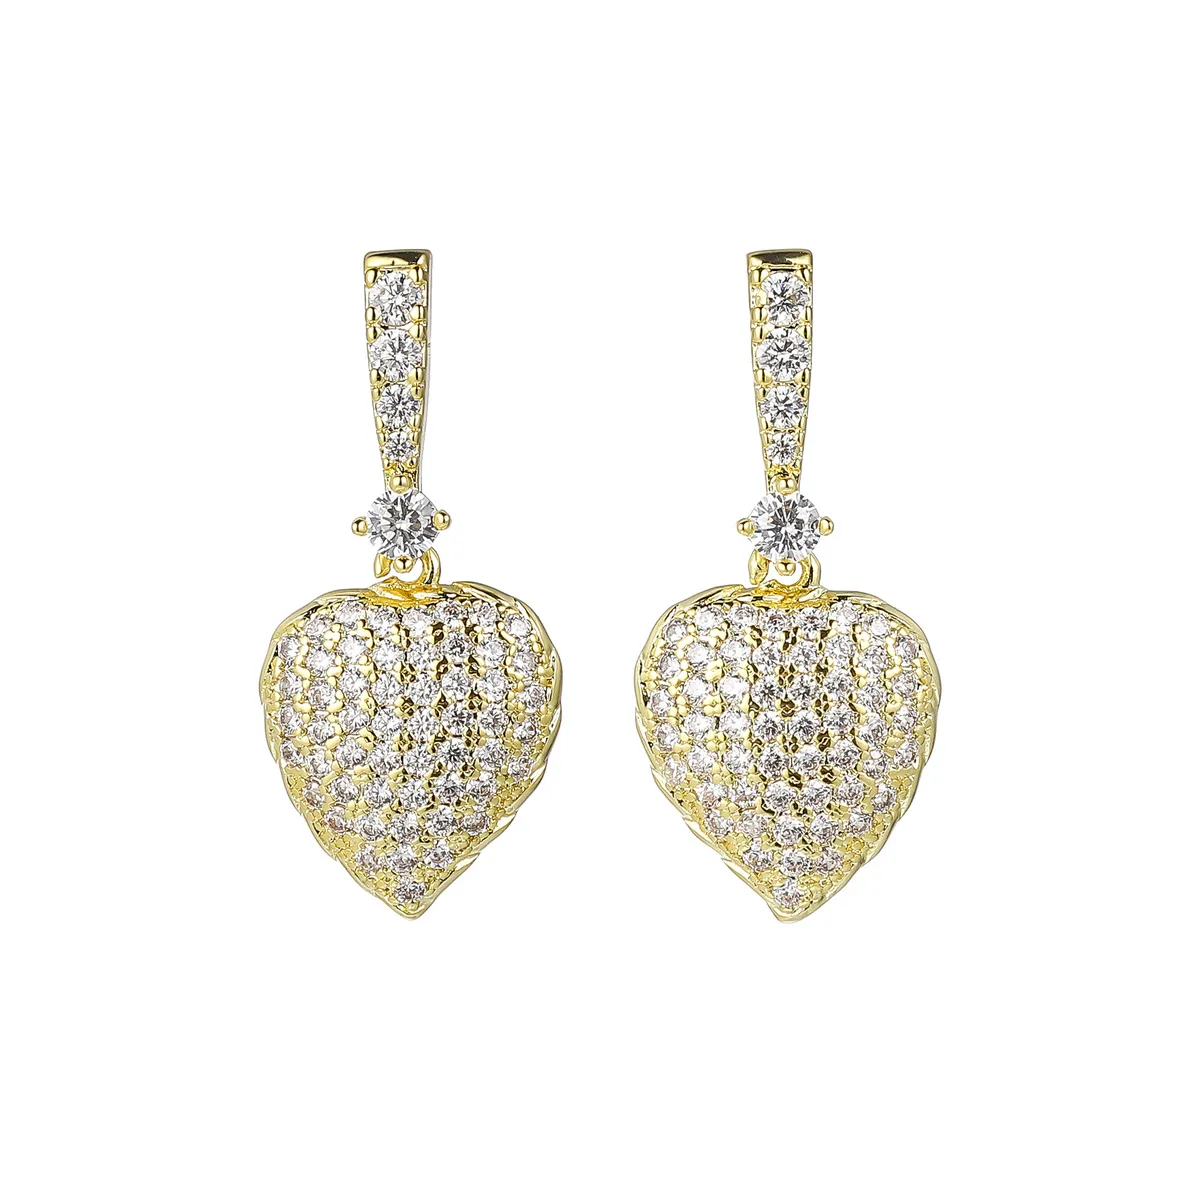 Bling Bling Zircon Brass Heart Dangle Hoop Earrings Ladies Silver Gold Plated Ear Cuff Diamond Stud Earrings Women